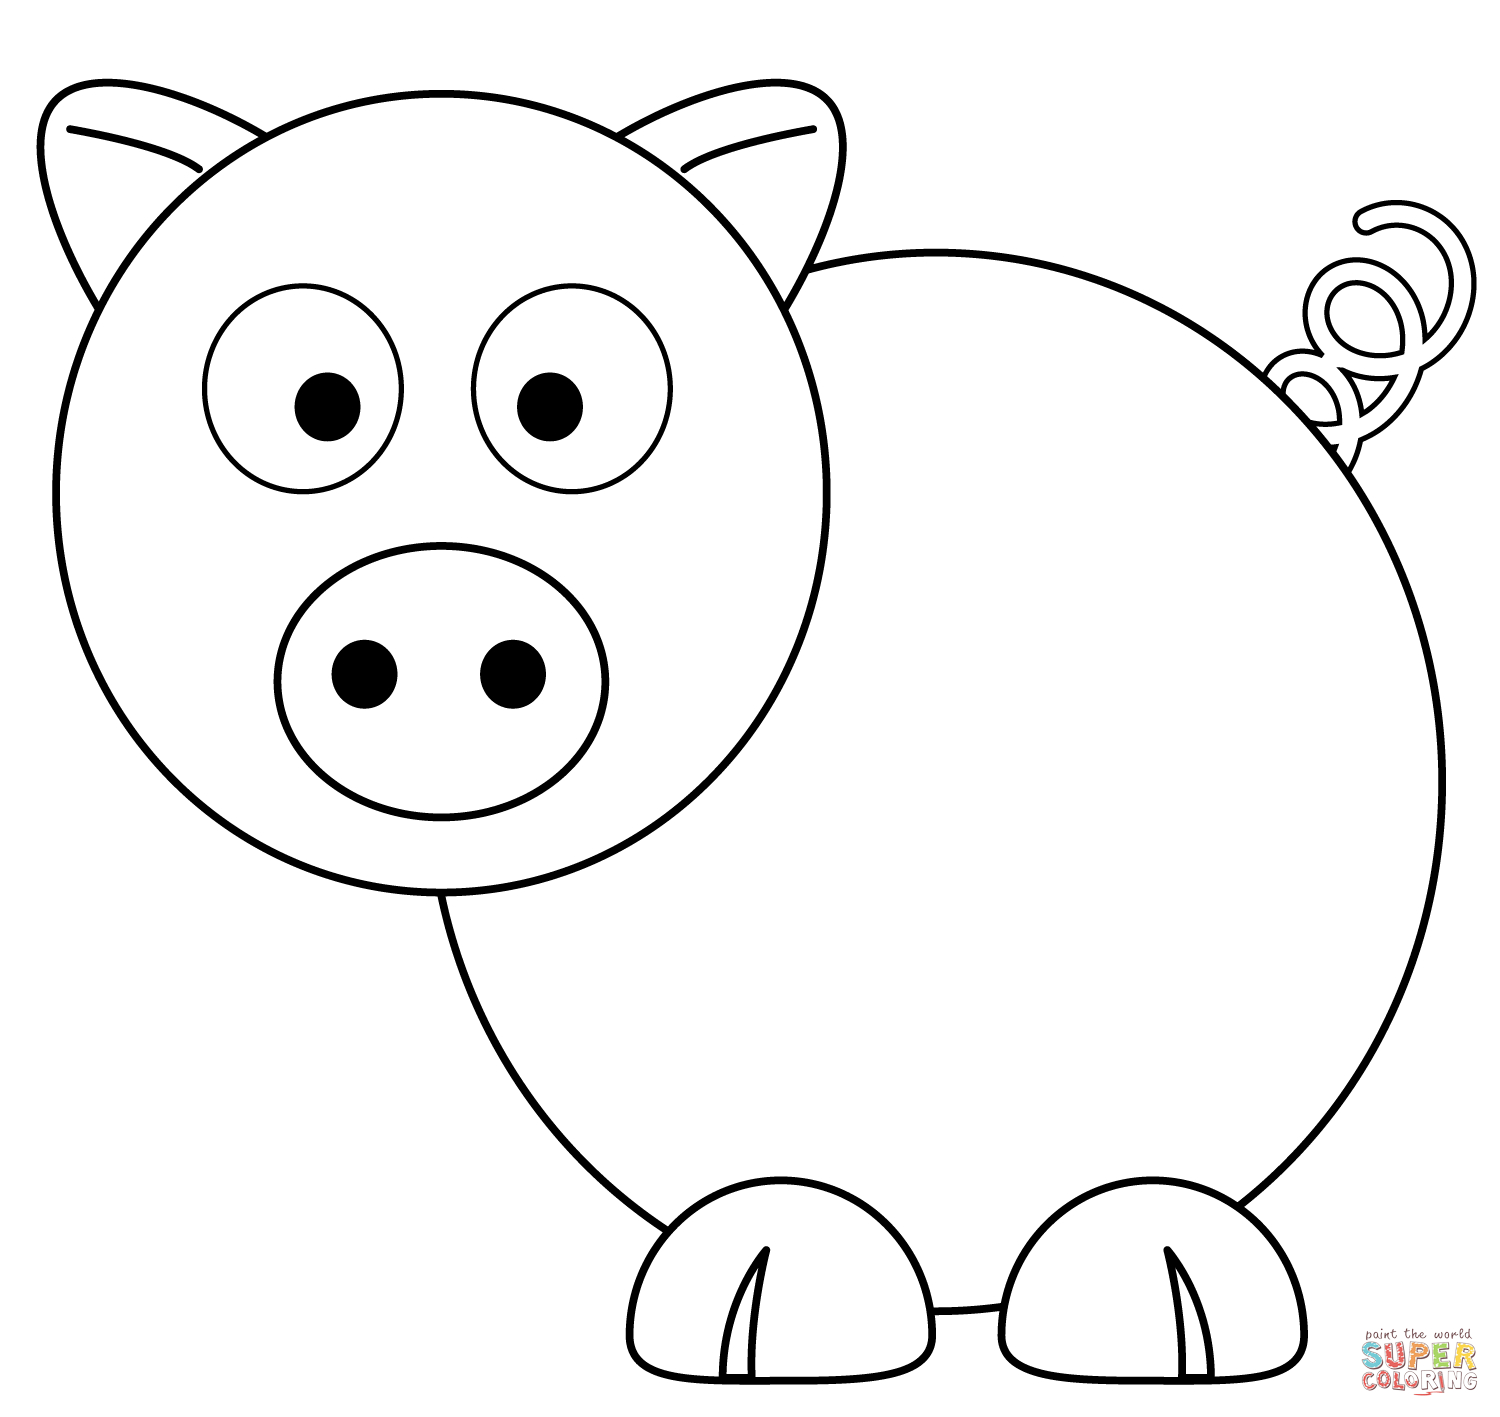 Ausmalbilder Schwein - Malvorlagen Kostenlos Zum Ausdrucken über Ausmalbild Schwein